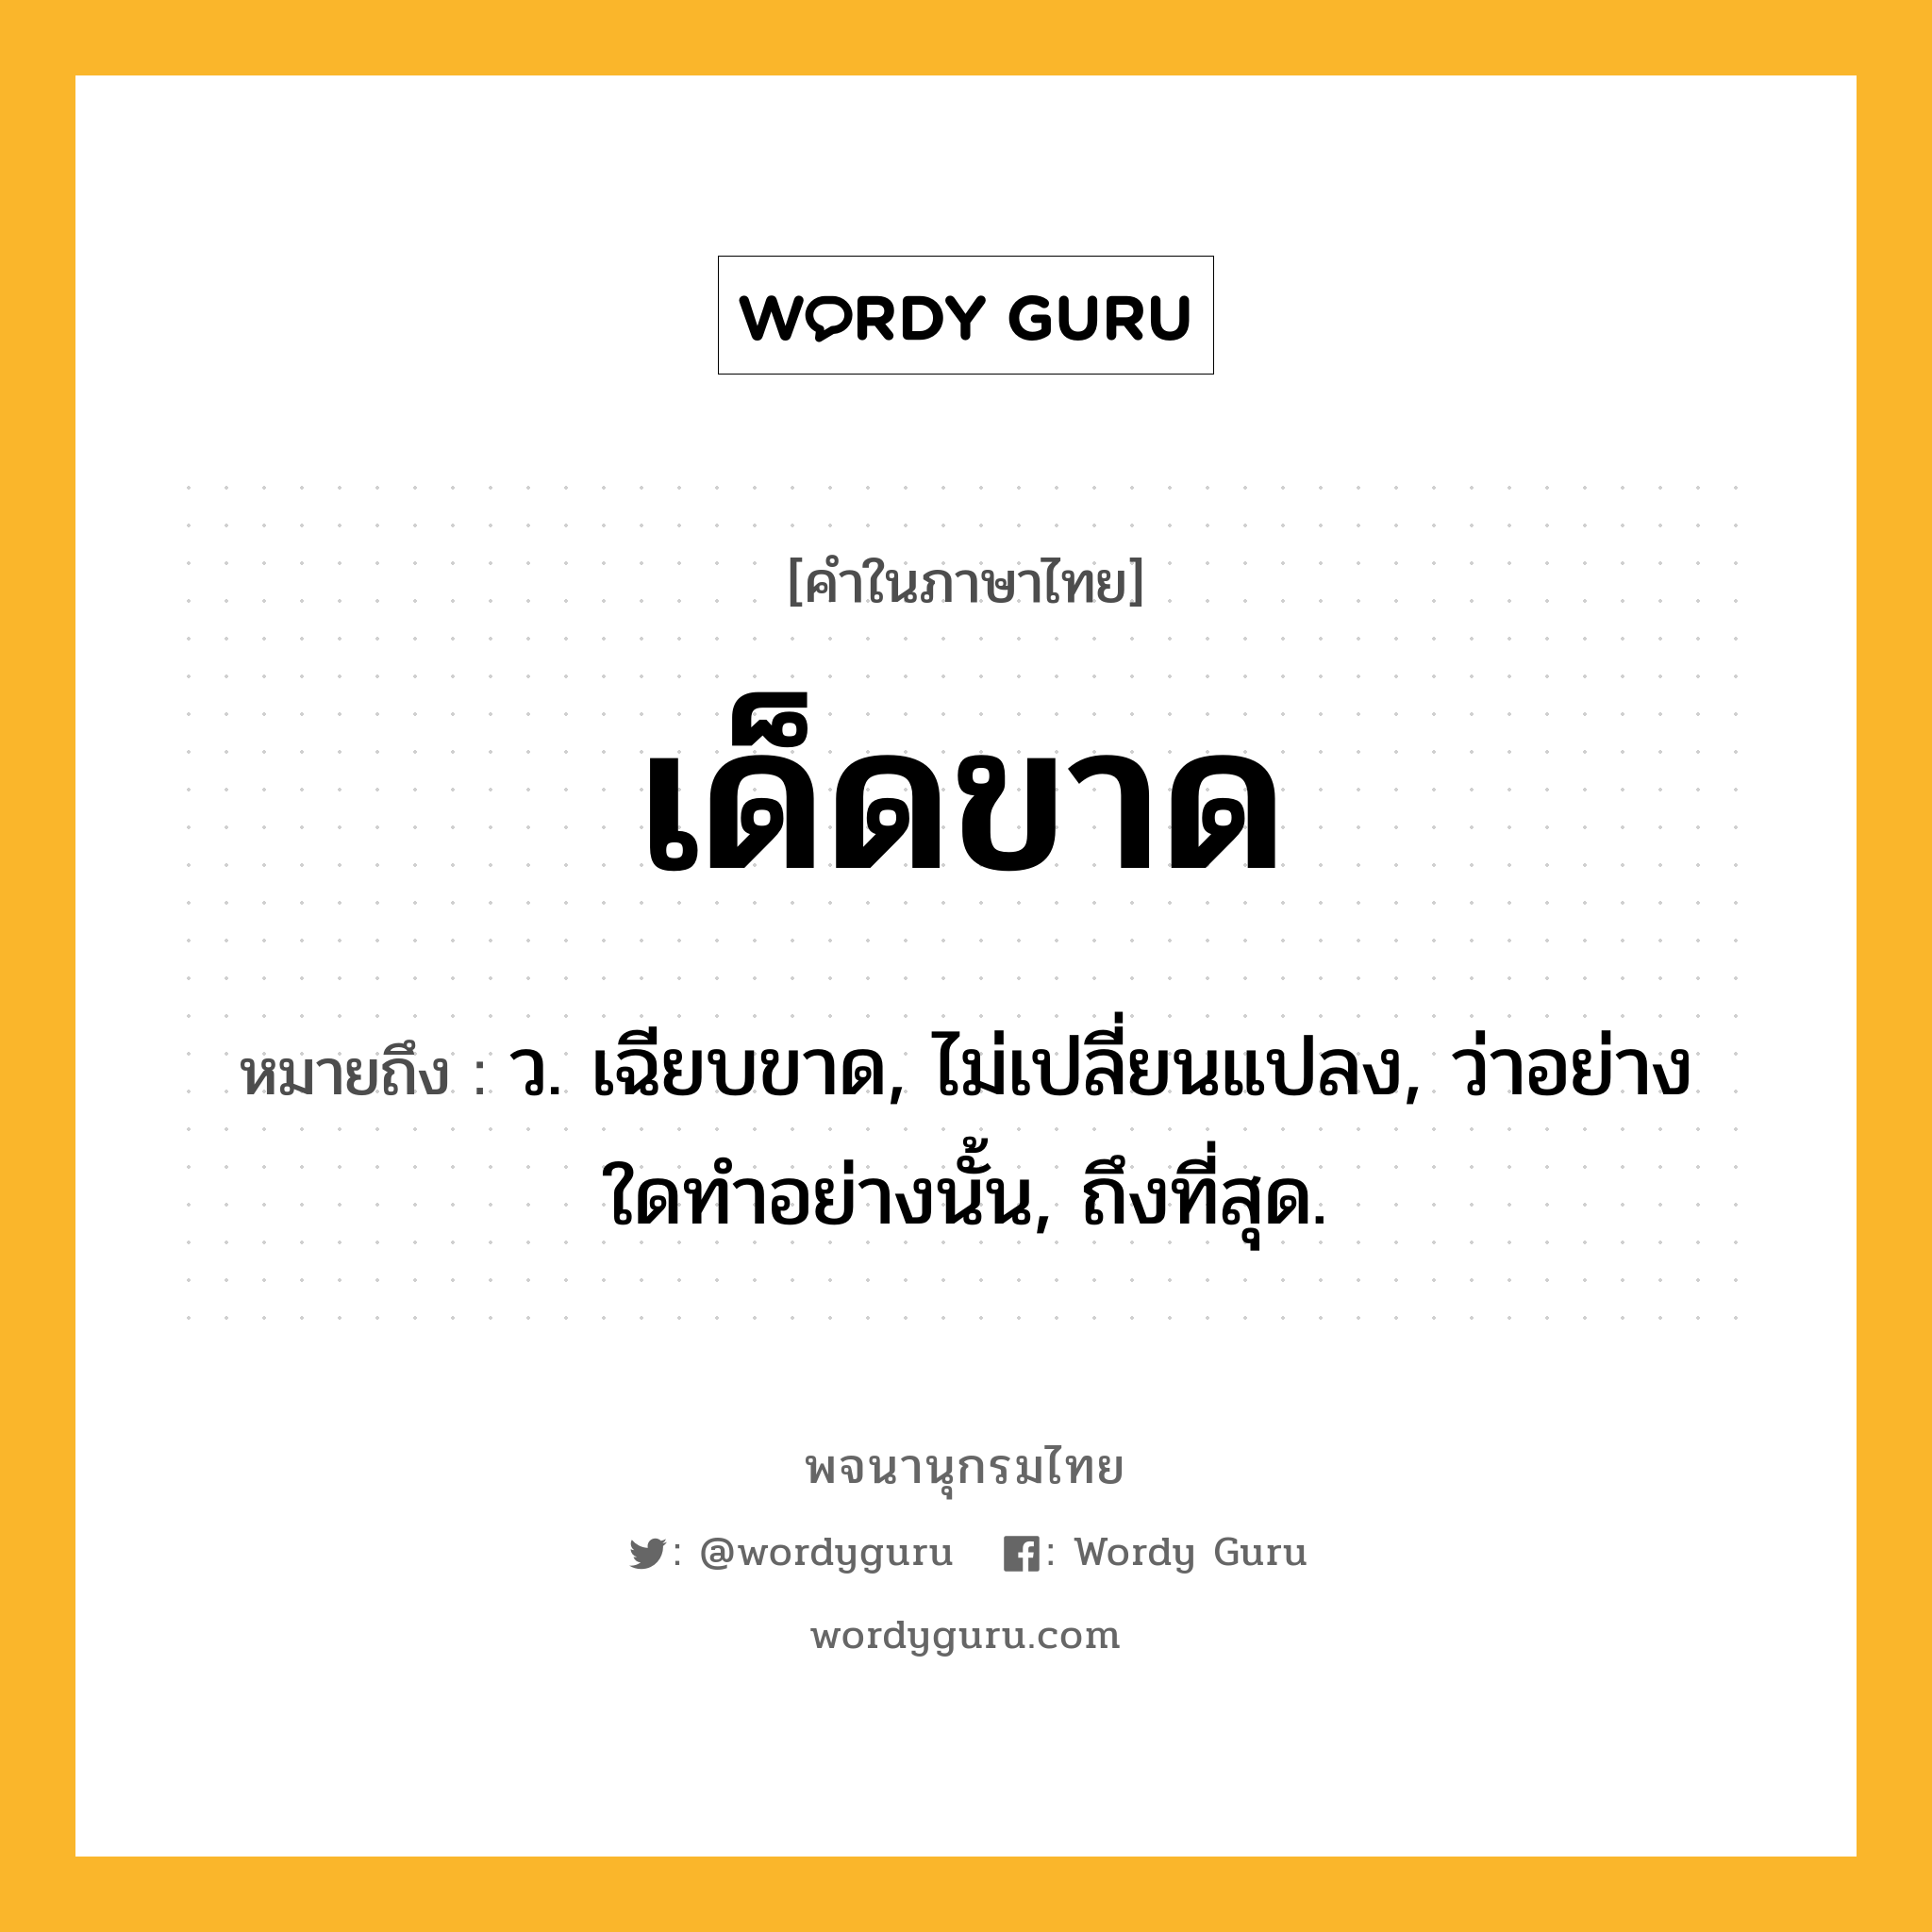 เด็ดขาด หมายถึงอะไร?, คำในภาษาไทย เด็ดขาด หมายถึง ว. เฉียบขาด, ไม่เปลี่ยนแปลง, ว่าอย่างใดทําอย่างนั้น, ถึงที่สุด.